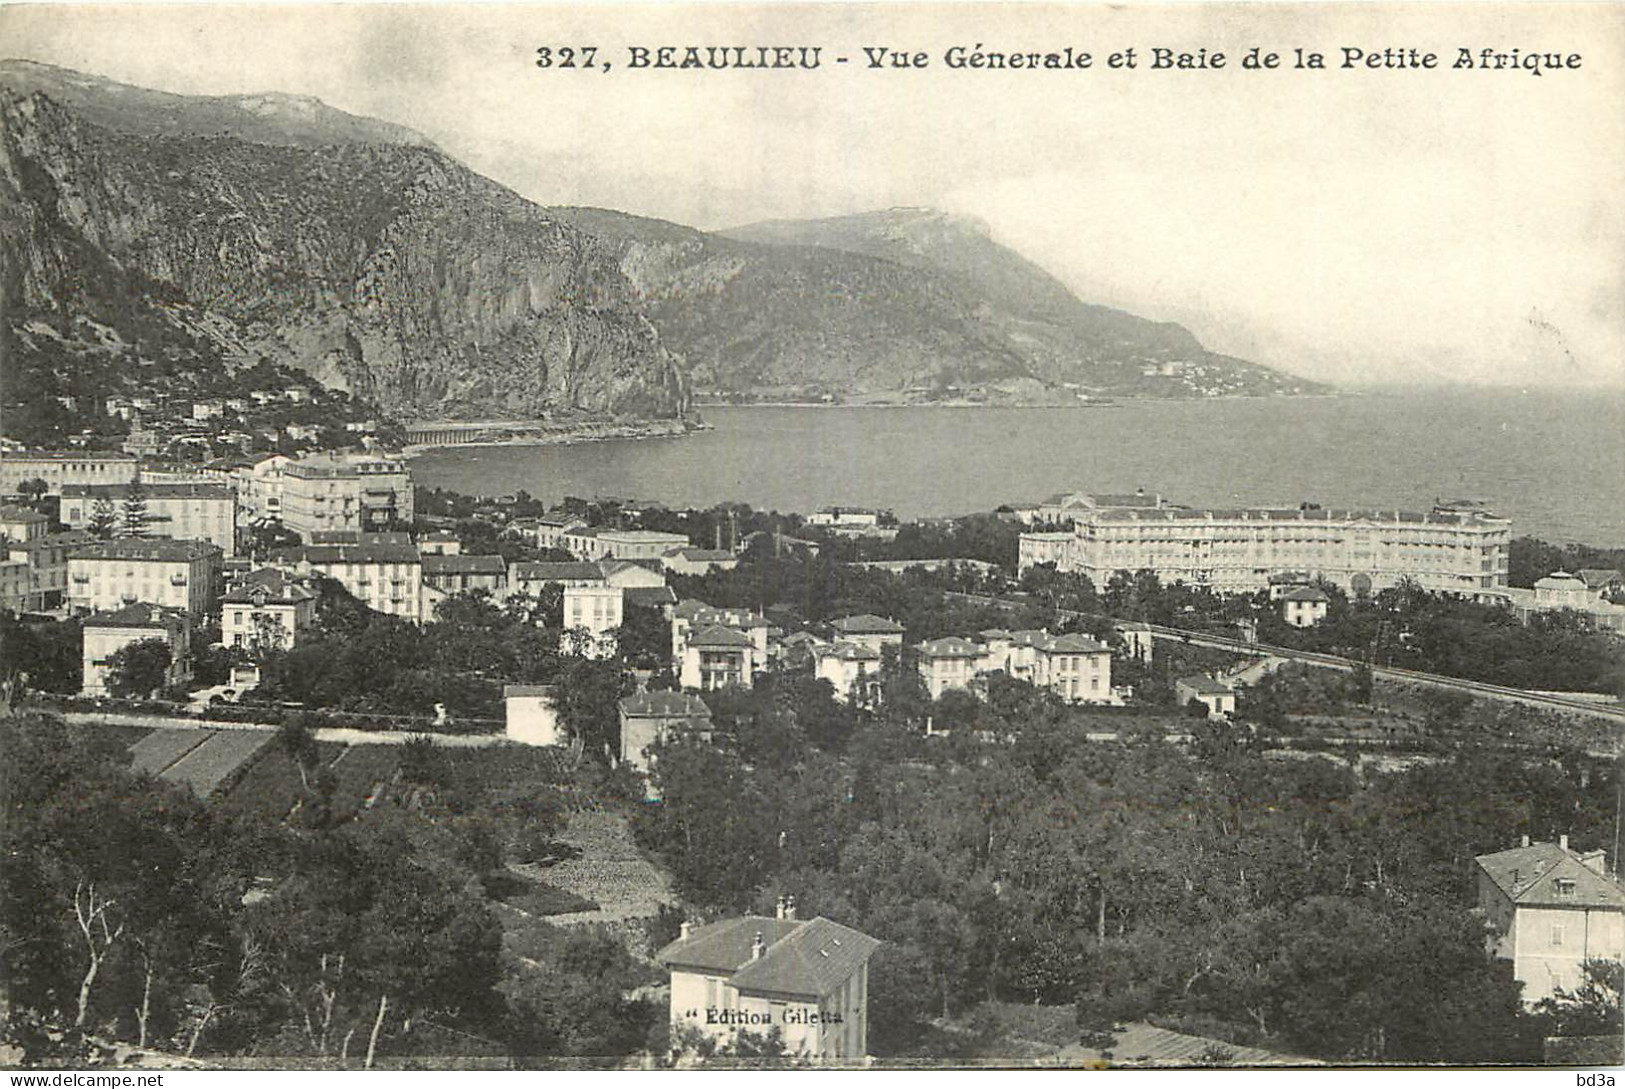 06 - BEAULIEU -  VUE GENERALE ET BAIE DE LA PETITE AFRIQUE - Beaulieu-sur-Mer